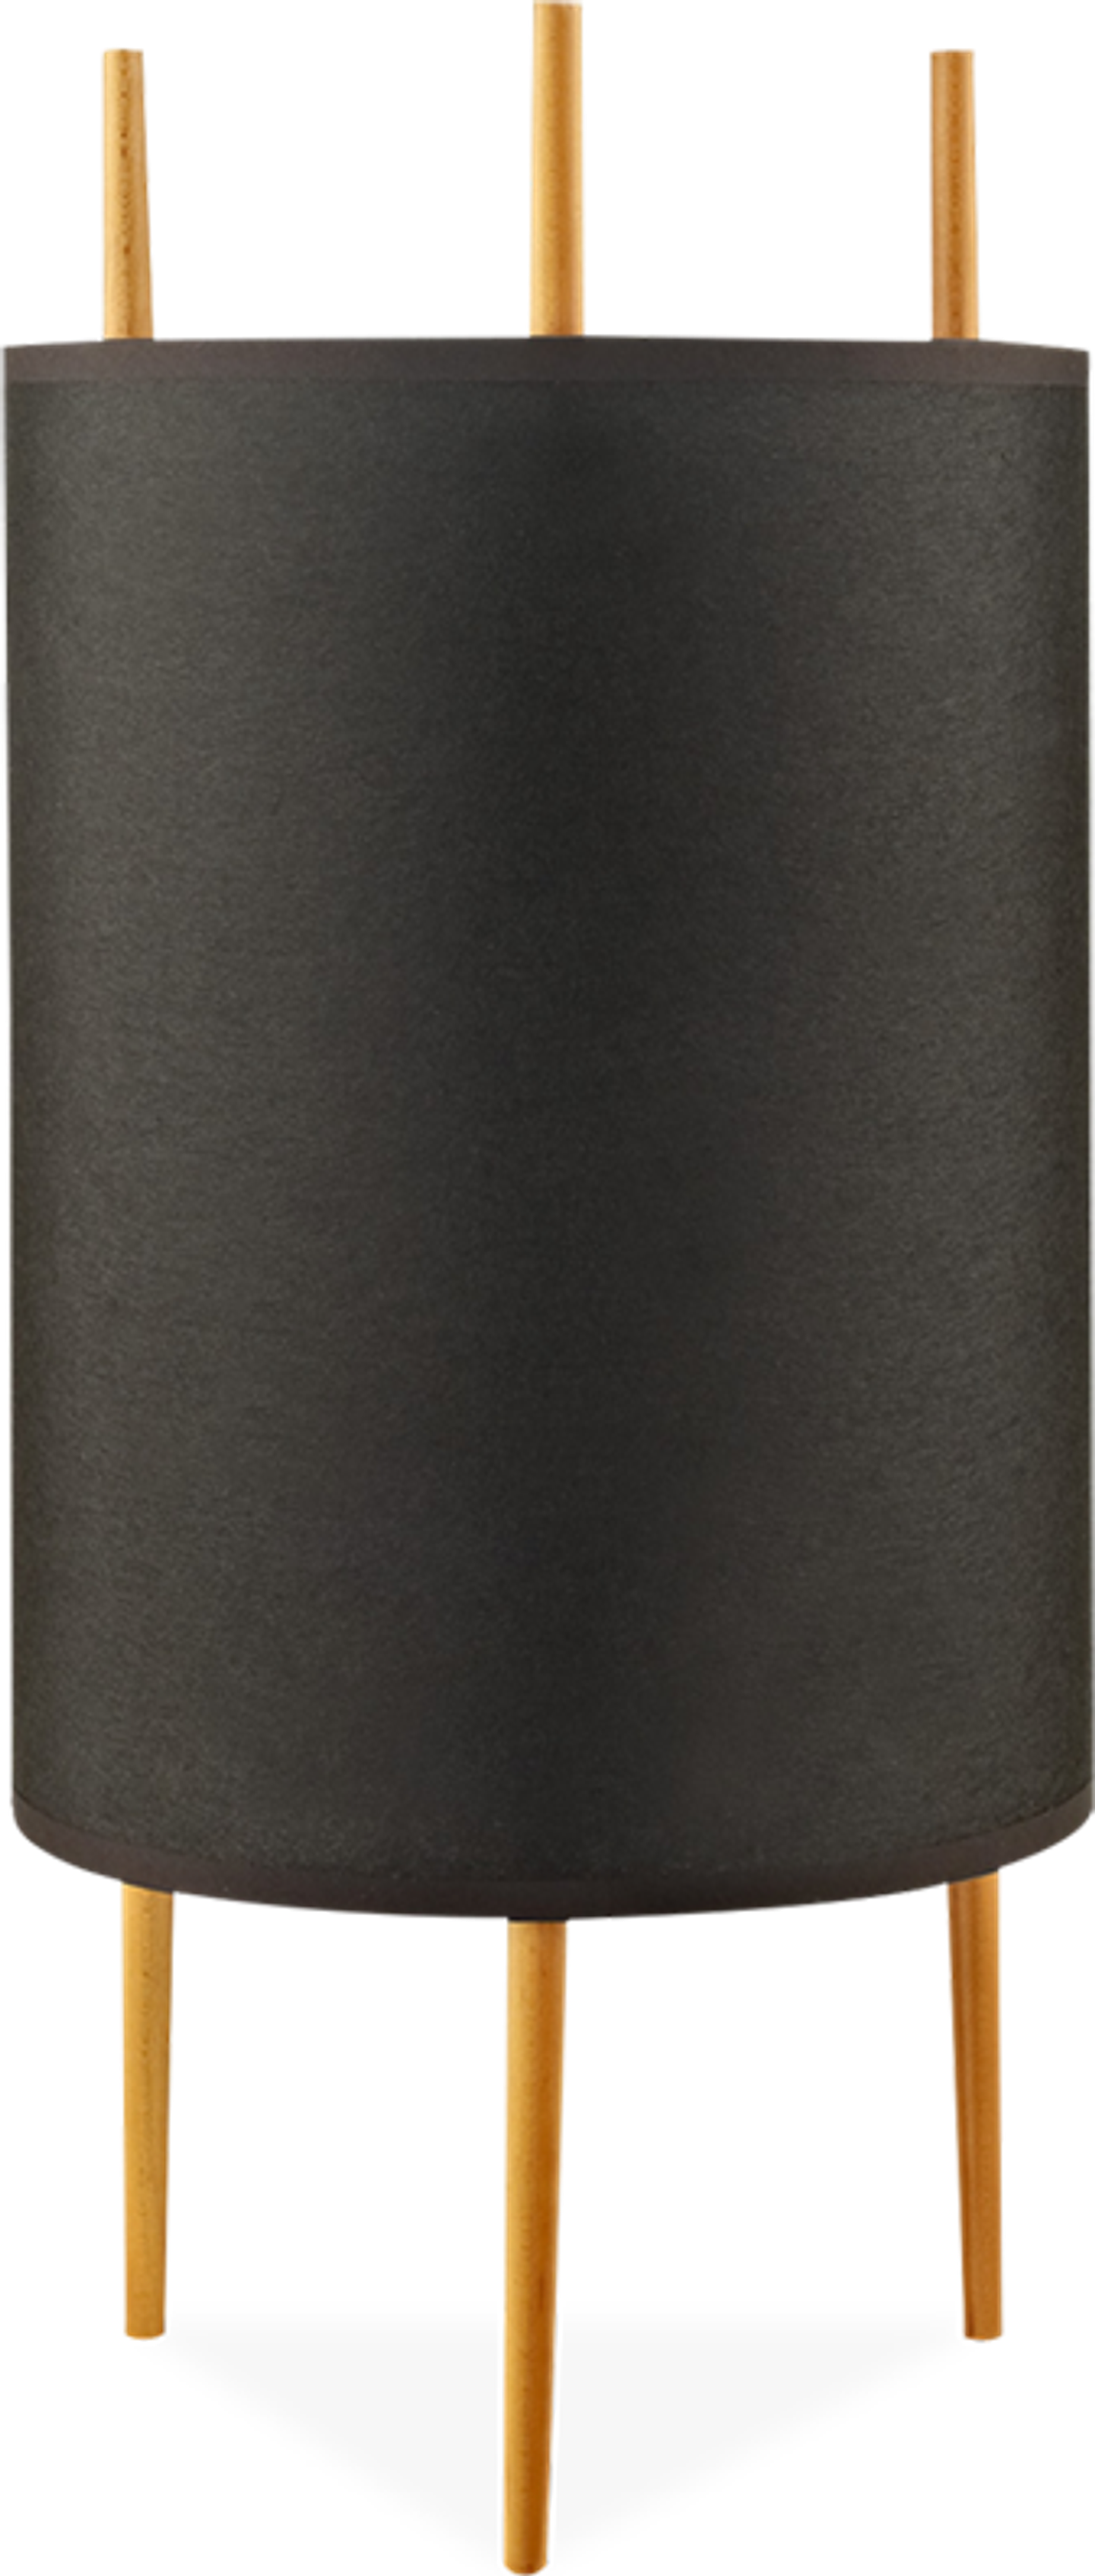 Cylinder Style Lamp Black image.